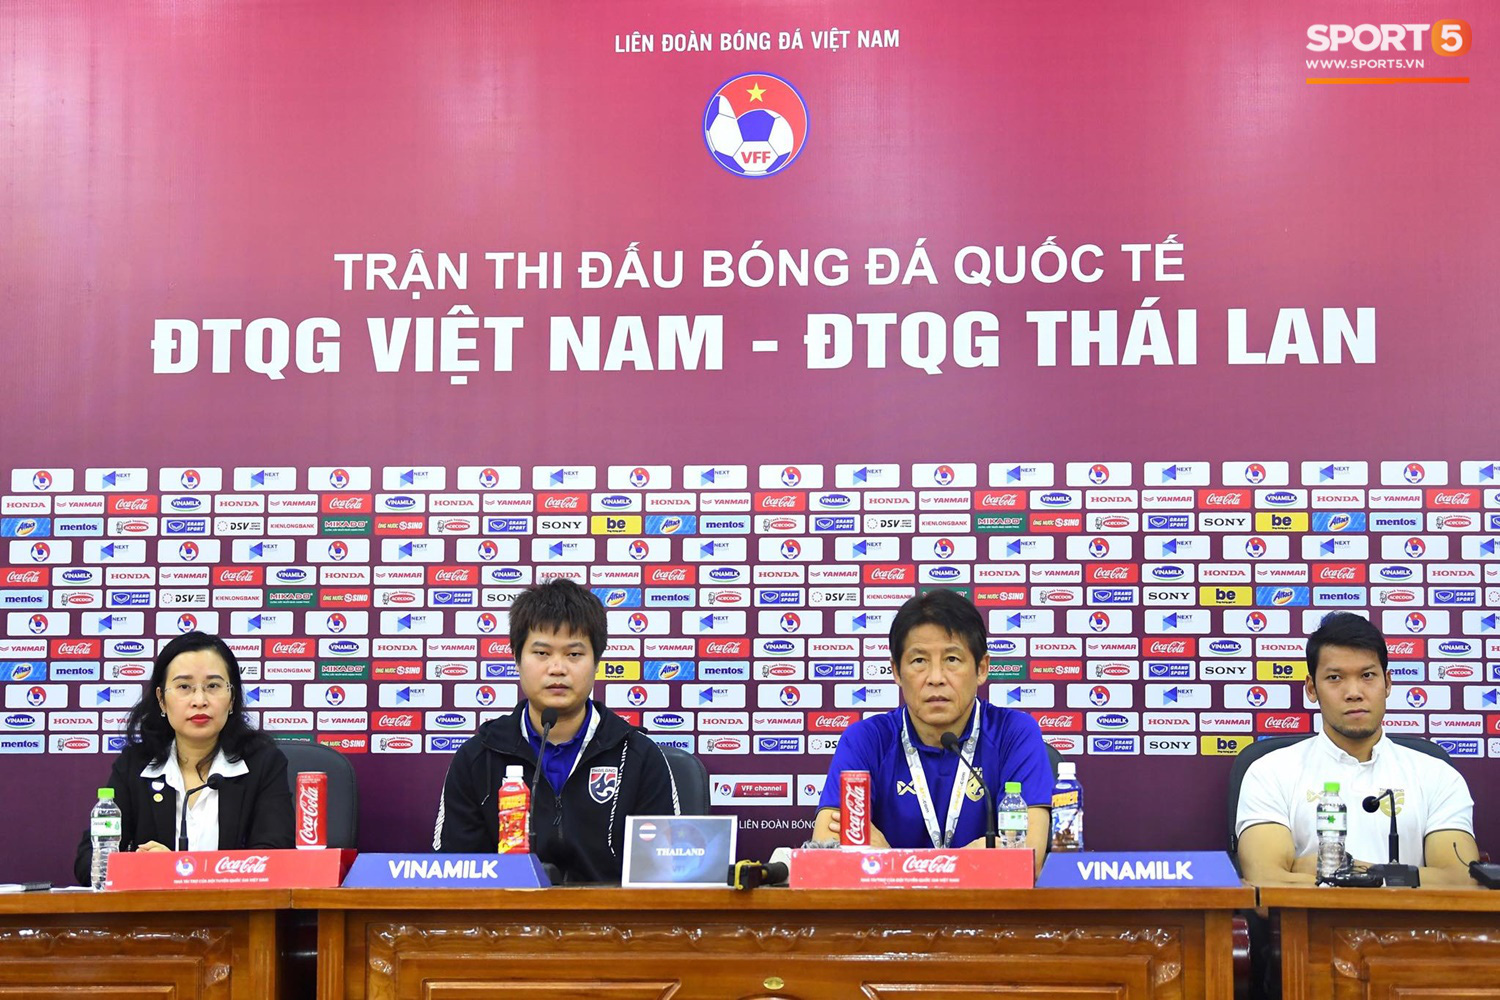 HLV Park Hang-seo: Quang Hải nhận được lời mời từ CLB Tây Ban Nha trước trận đấu Thái Lan - Ảnh 5.